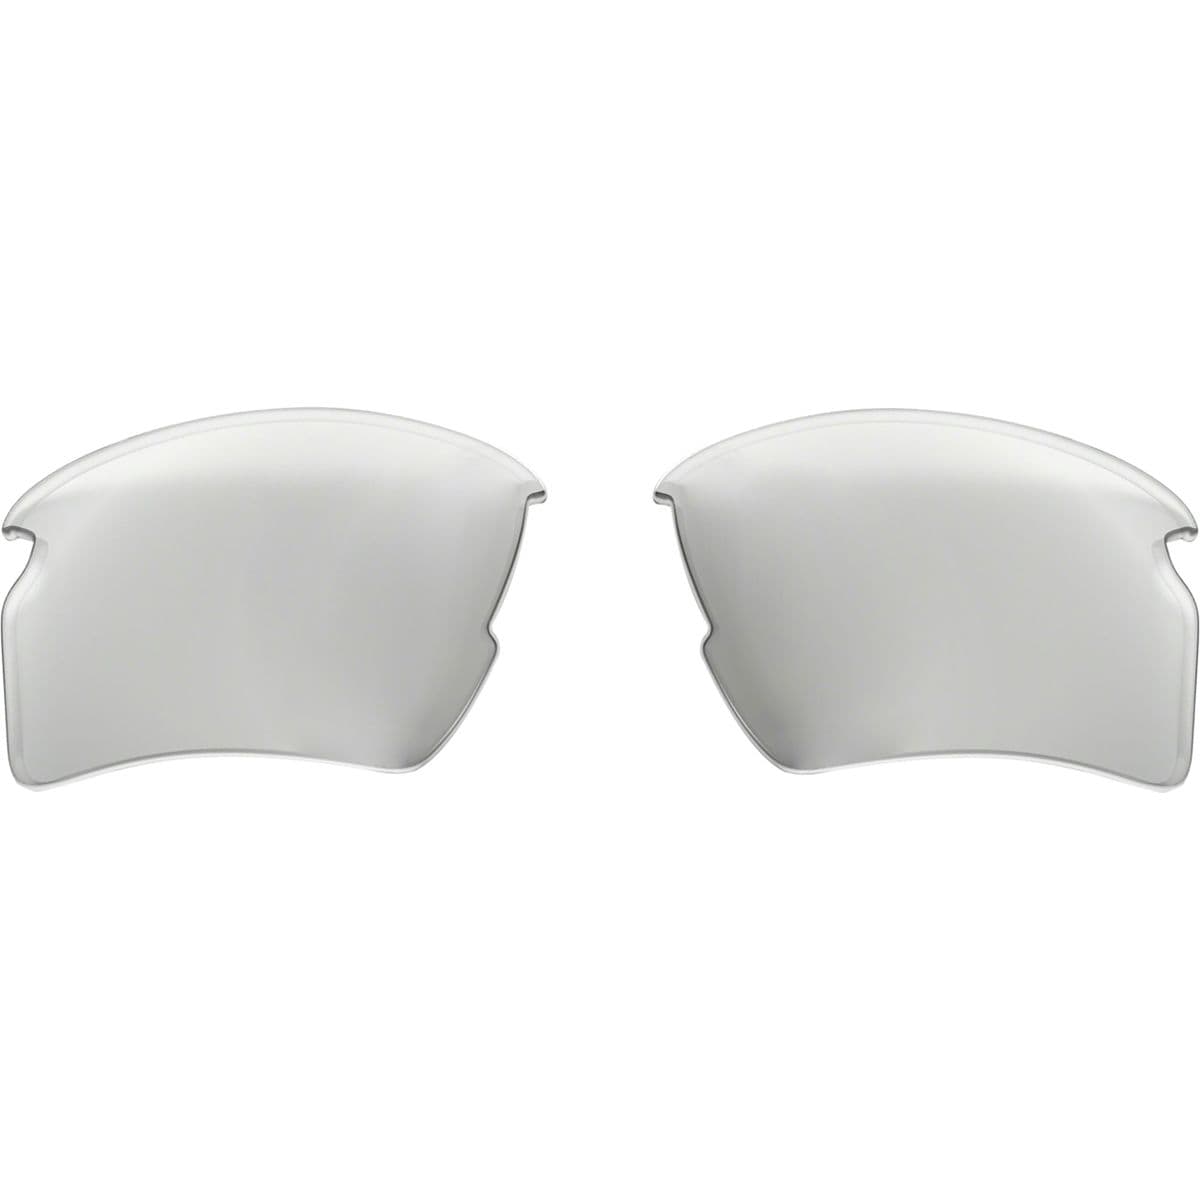 Oakley Flak 2.0 XL Sunglasses Replacement Lens